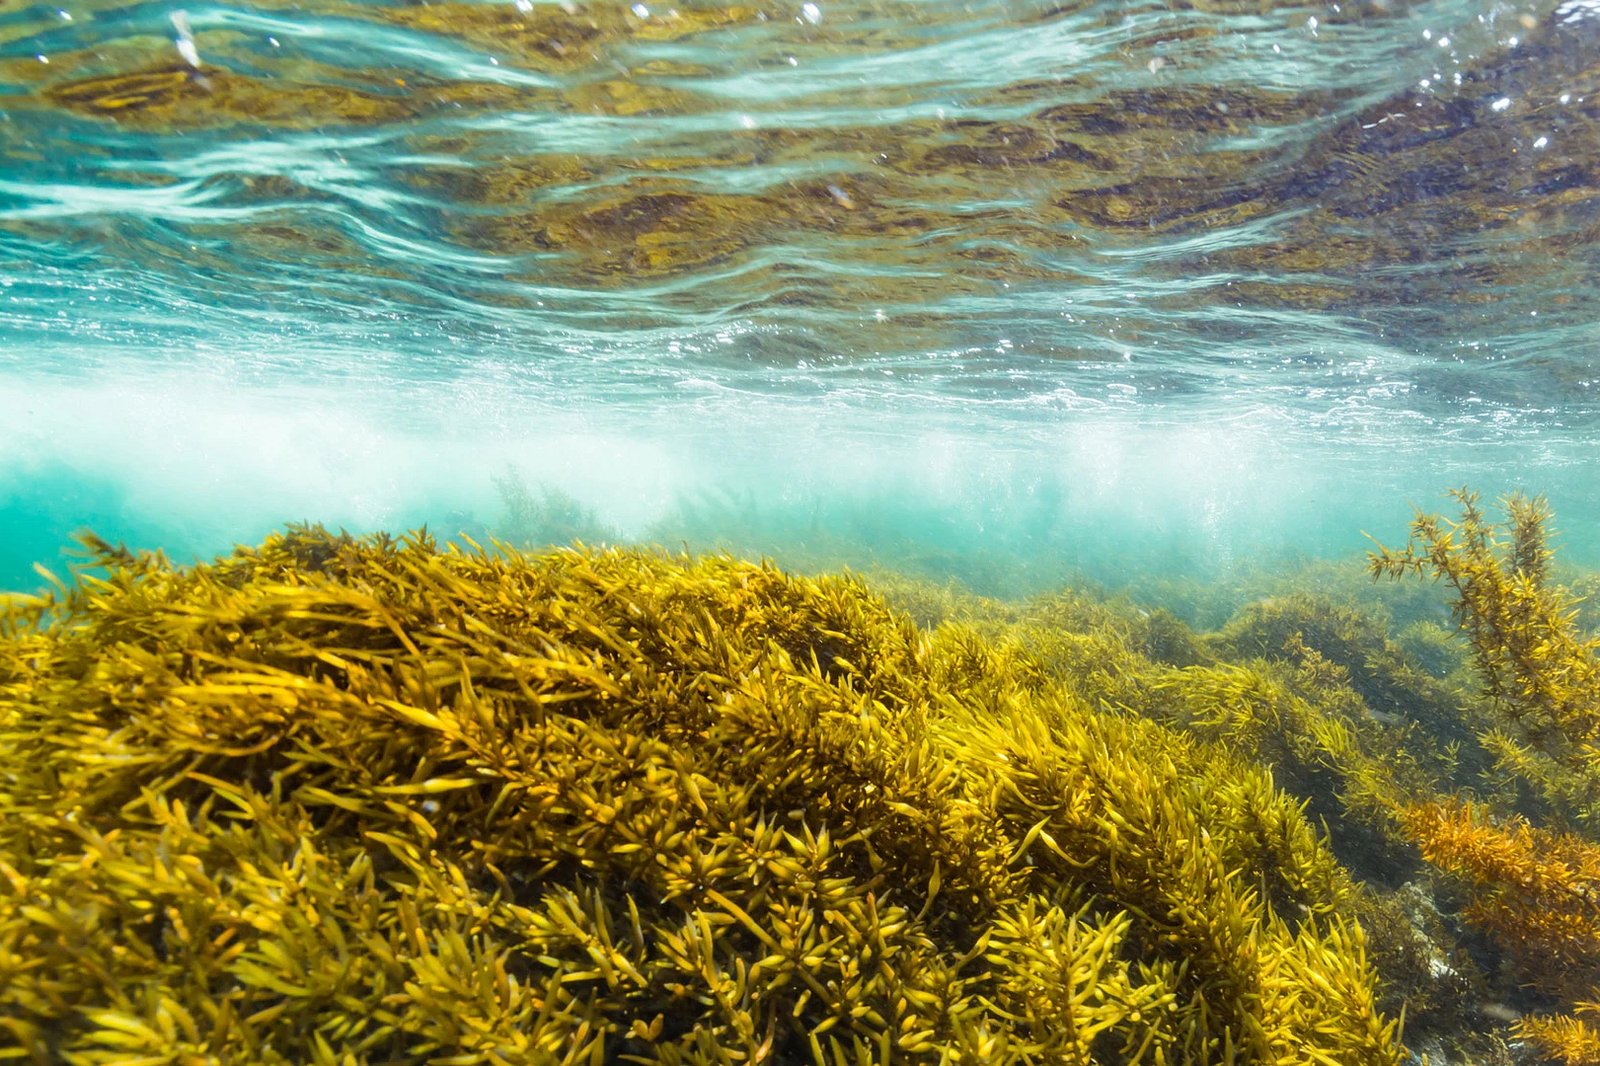 马自达通过海藻制造燃料来维持 Miata 燃烧梦想-豁天游|活田酉 一个专门分享有趣的信息，激发人们的求知欲。